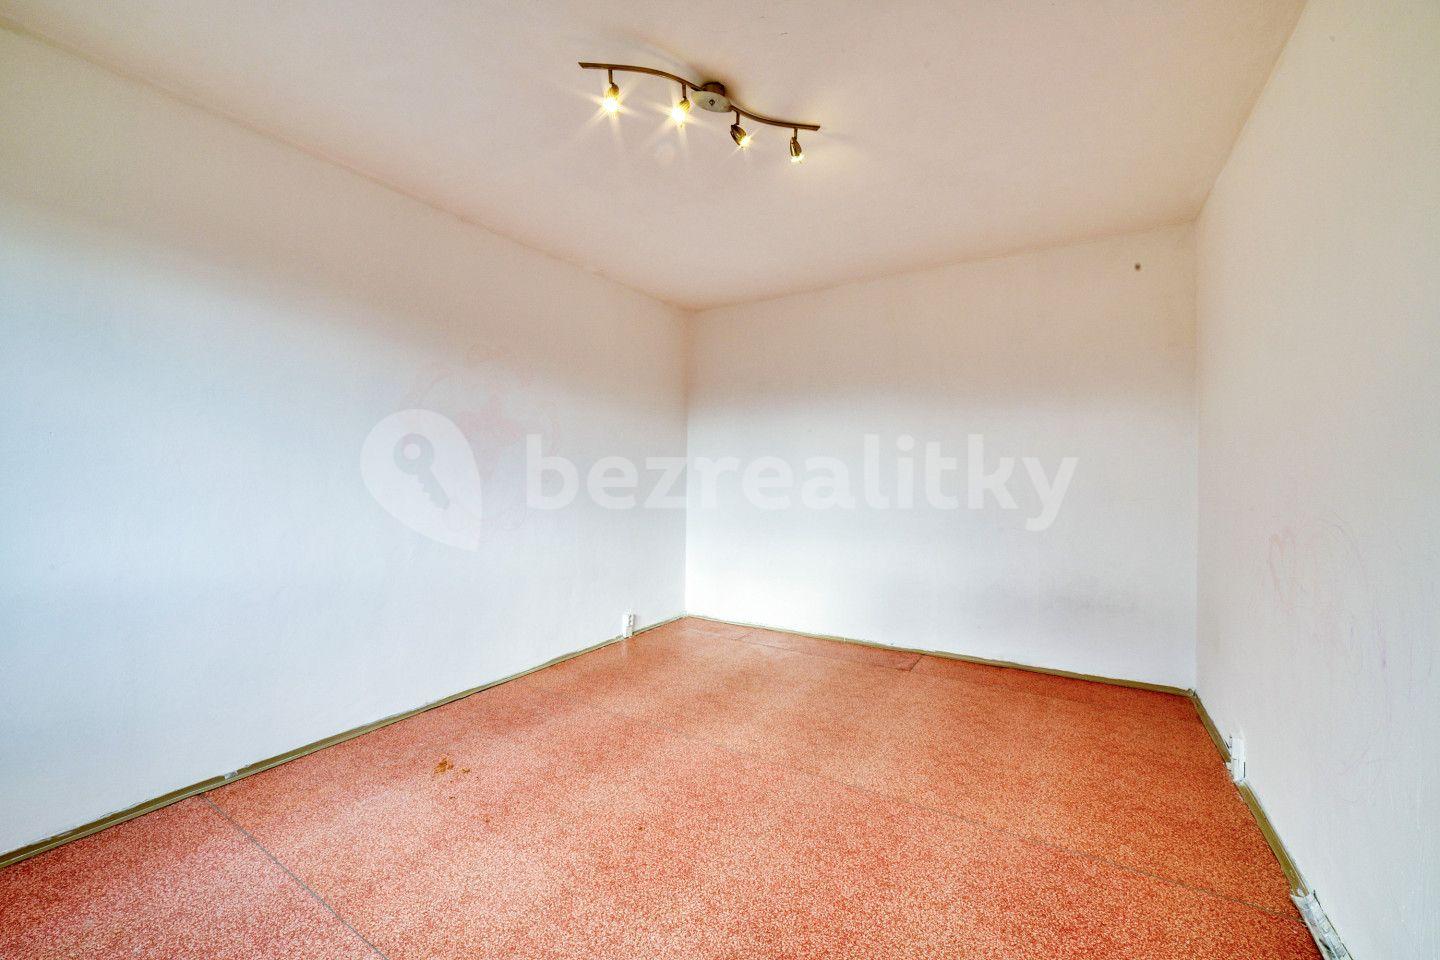 1 bedroom flat for sale, 41 m², Palackého, Teplá, Karlovarský Region